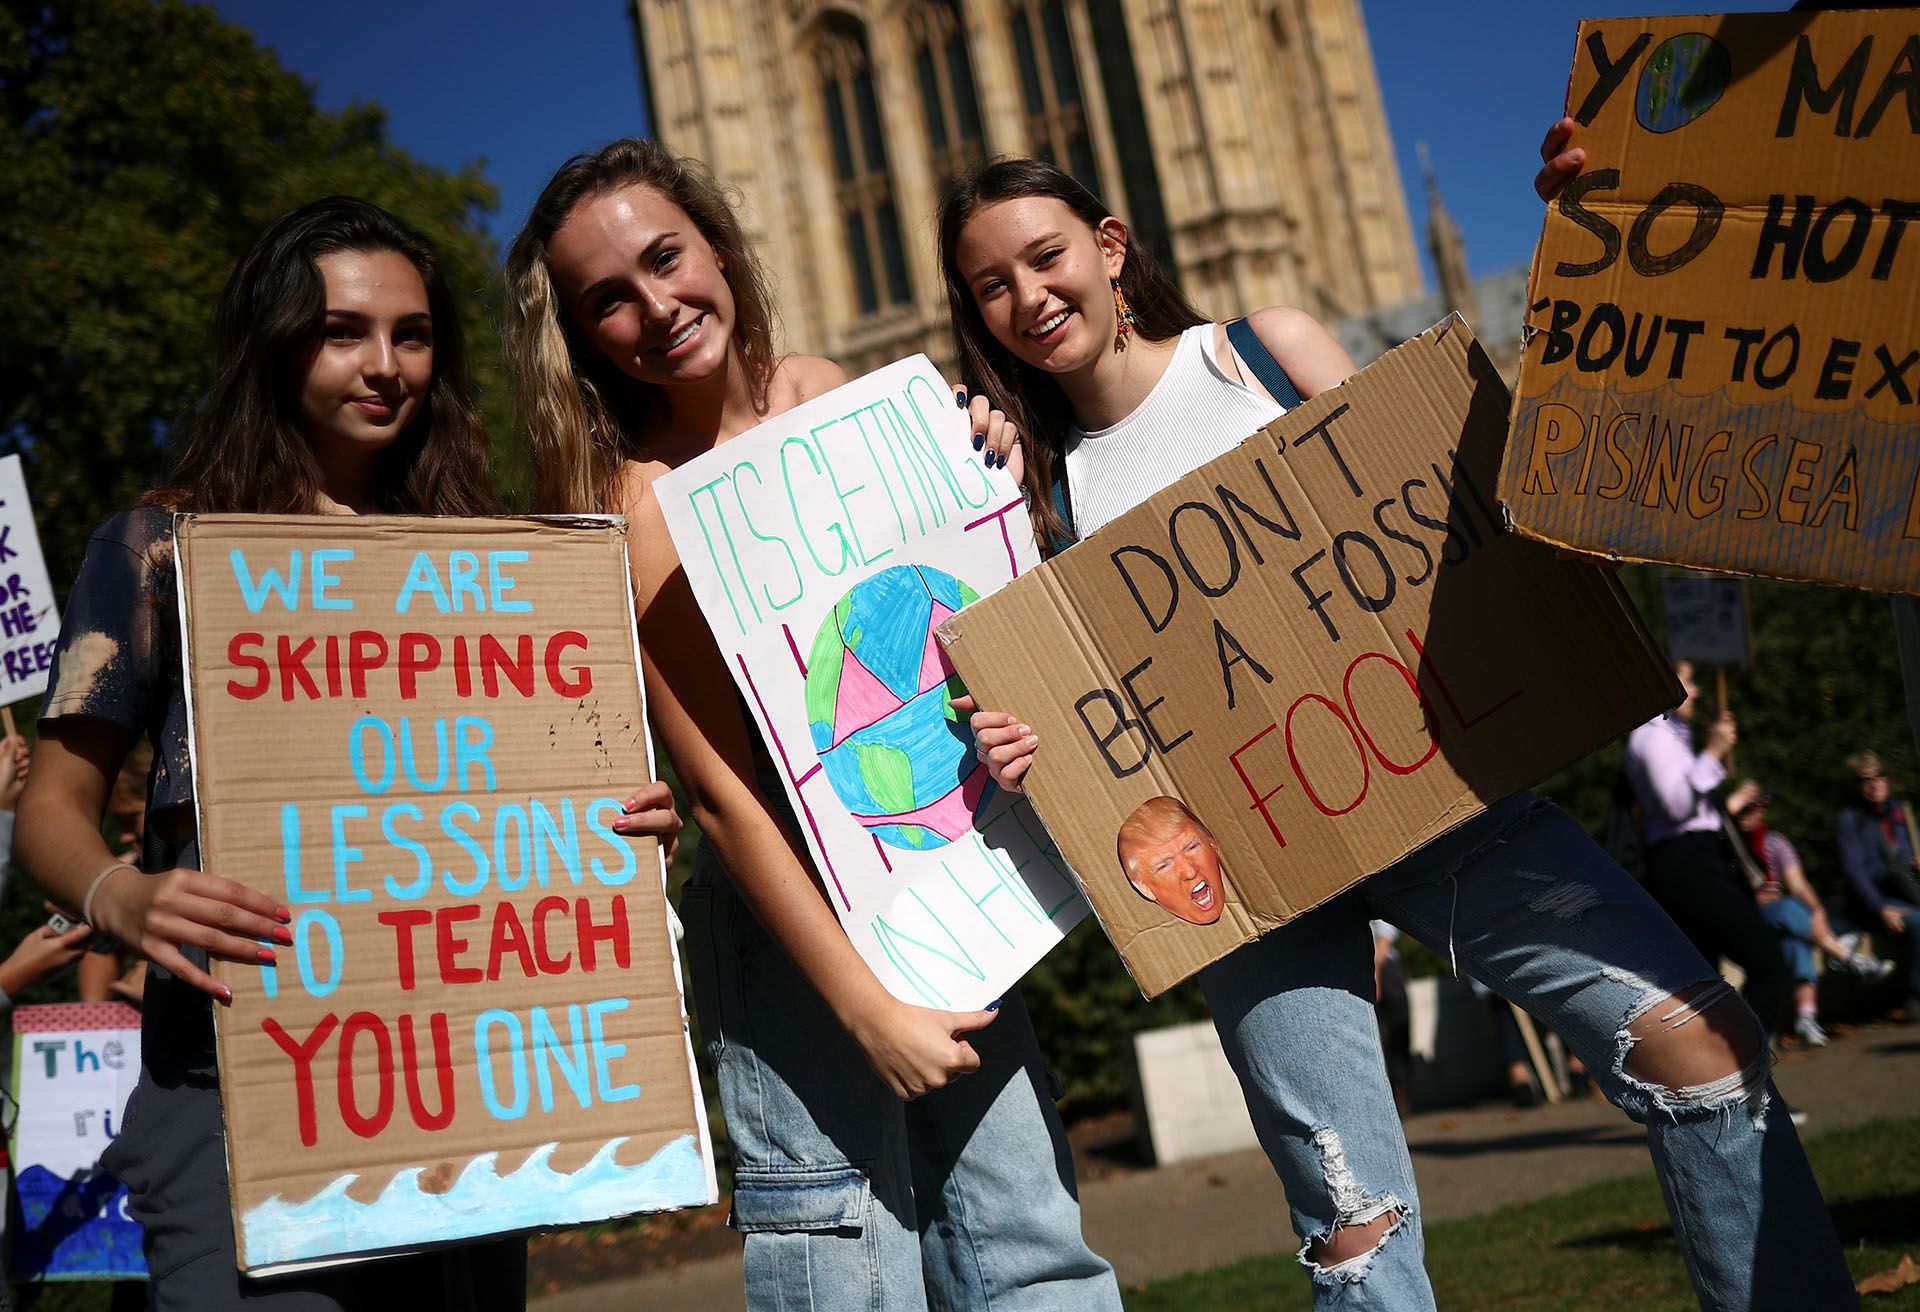 Estudiantes sostienen pancartas en la manifestación sobre el cambio climático en Londres, Reino Unido (REUTERS/Hannah McKay)